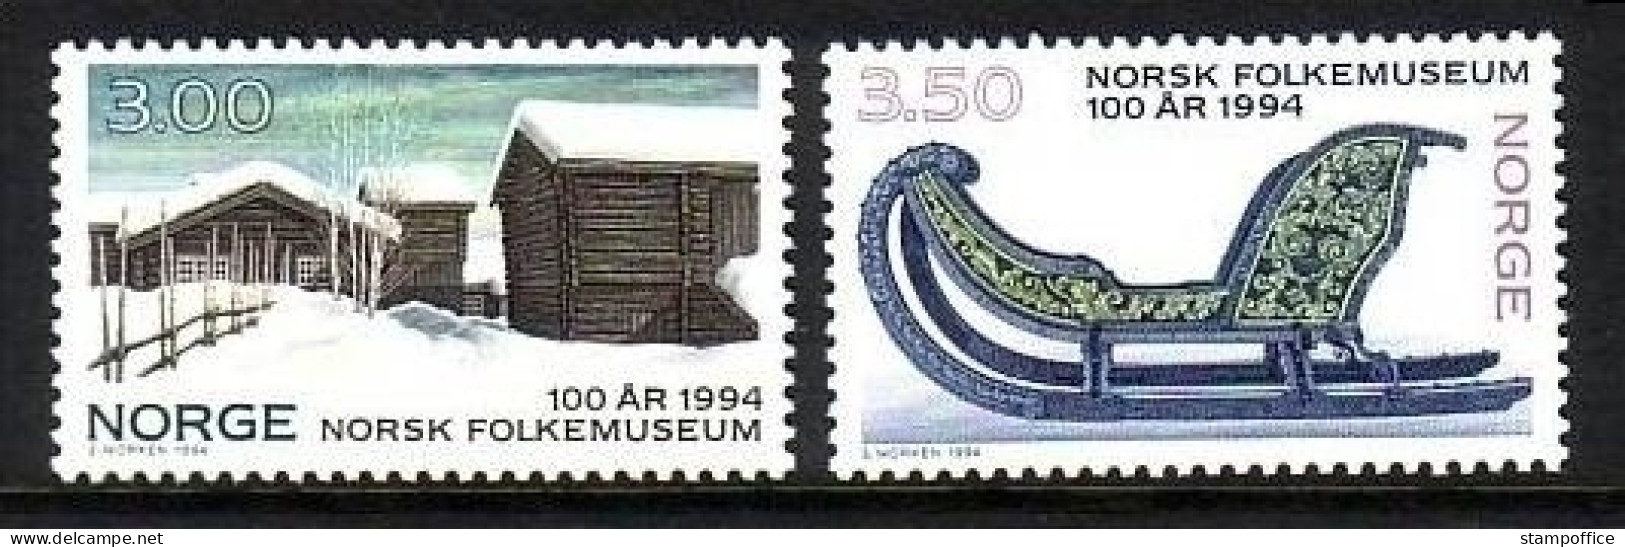 NORWEGEN MI-NR. 1161-1162 POSTFRISCH(MINT) FREILICHTMUSEUM - BAUERNHAUS, PFERDESCHLITTEN - Museos